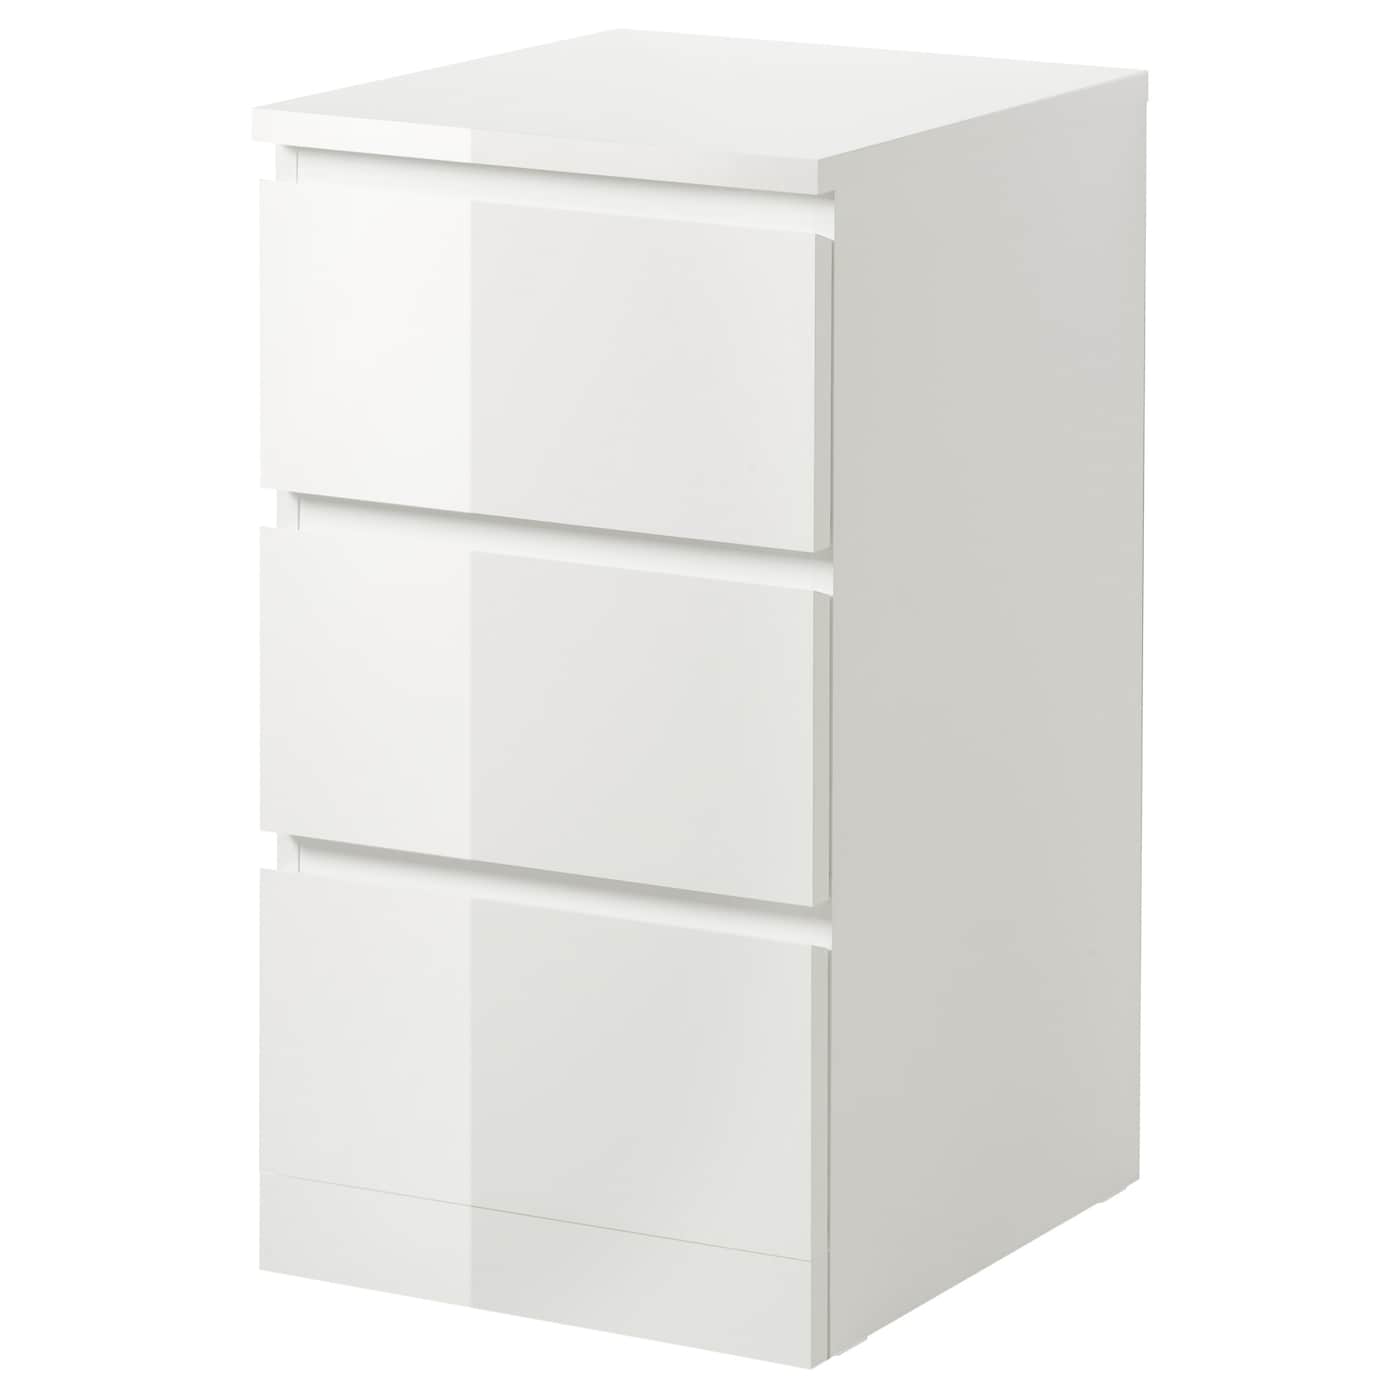 Комод - IKEA MALM/МАЛЬМ ИКЕА, 78х48х40 см, белый глянцевый